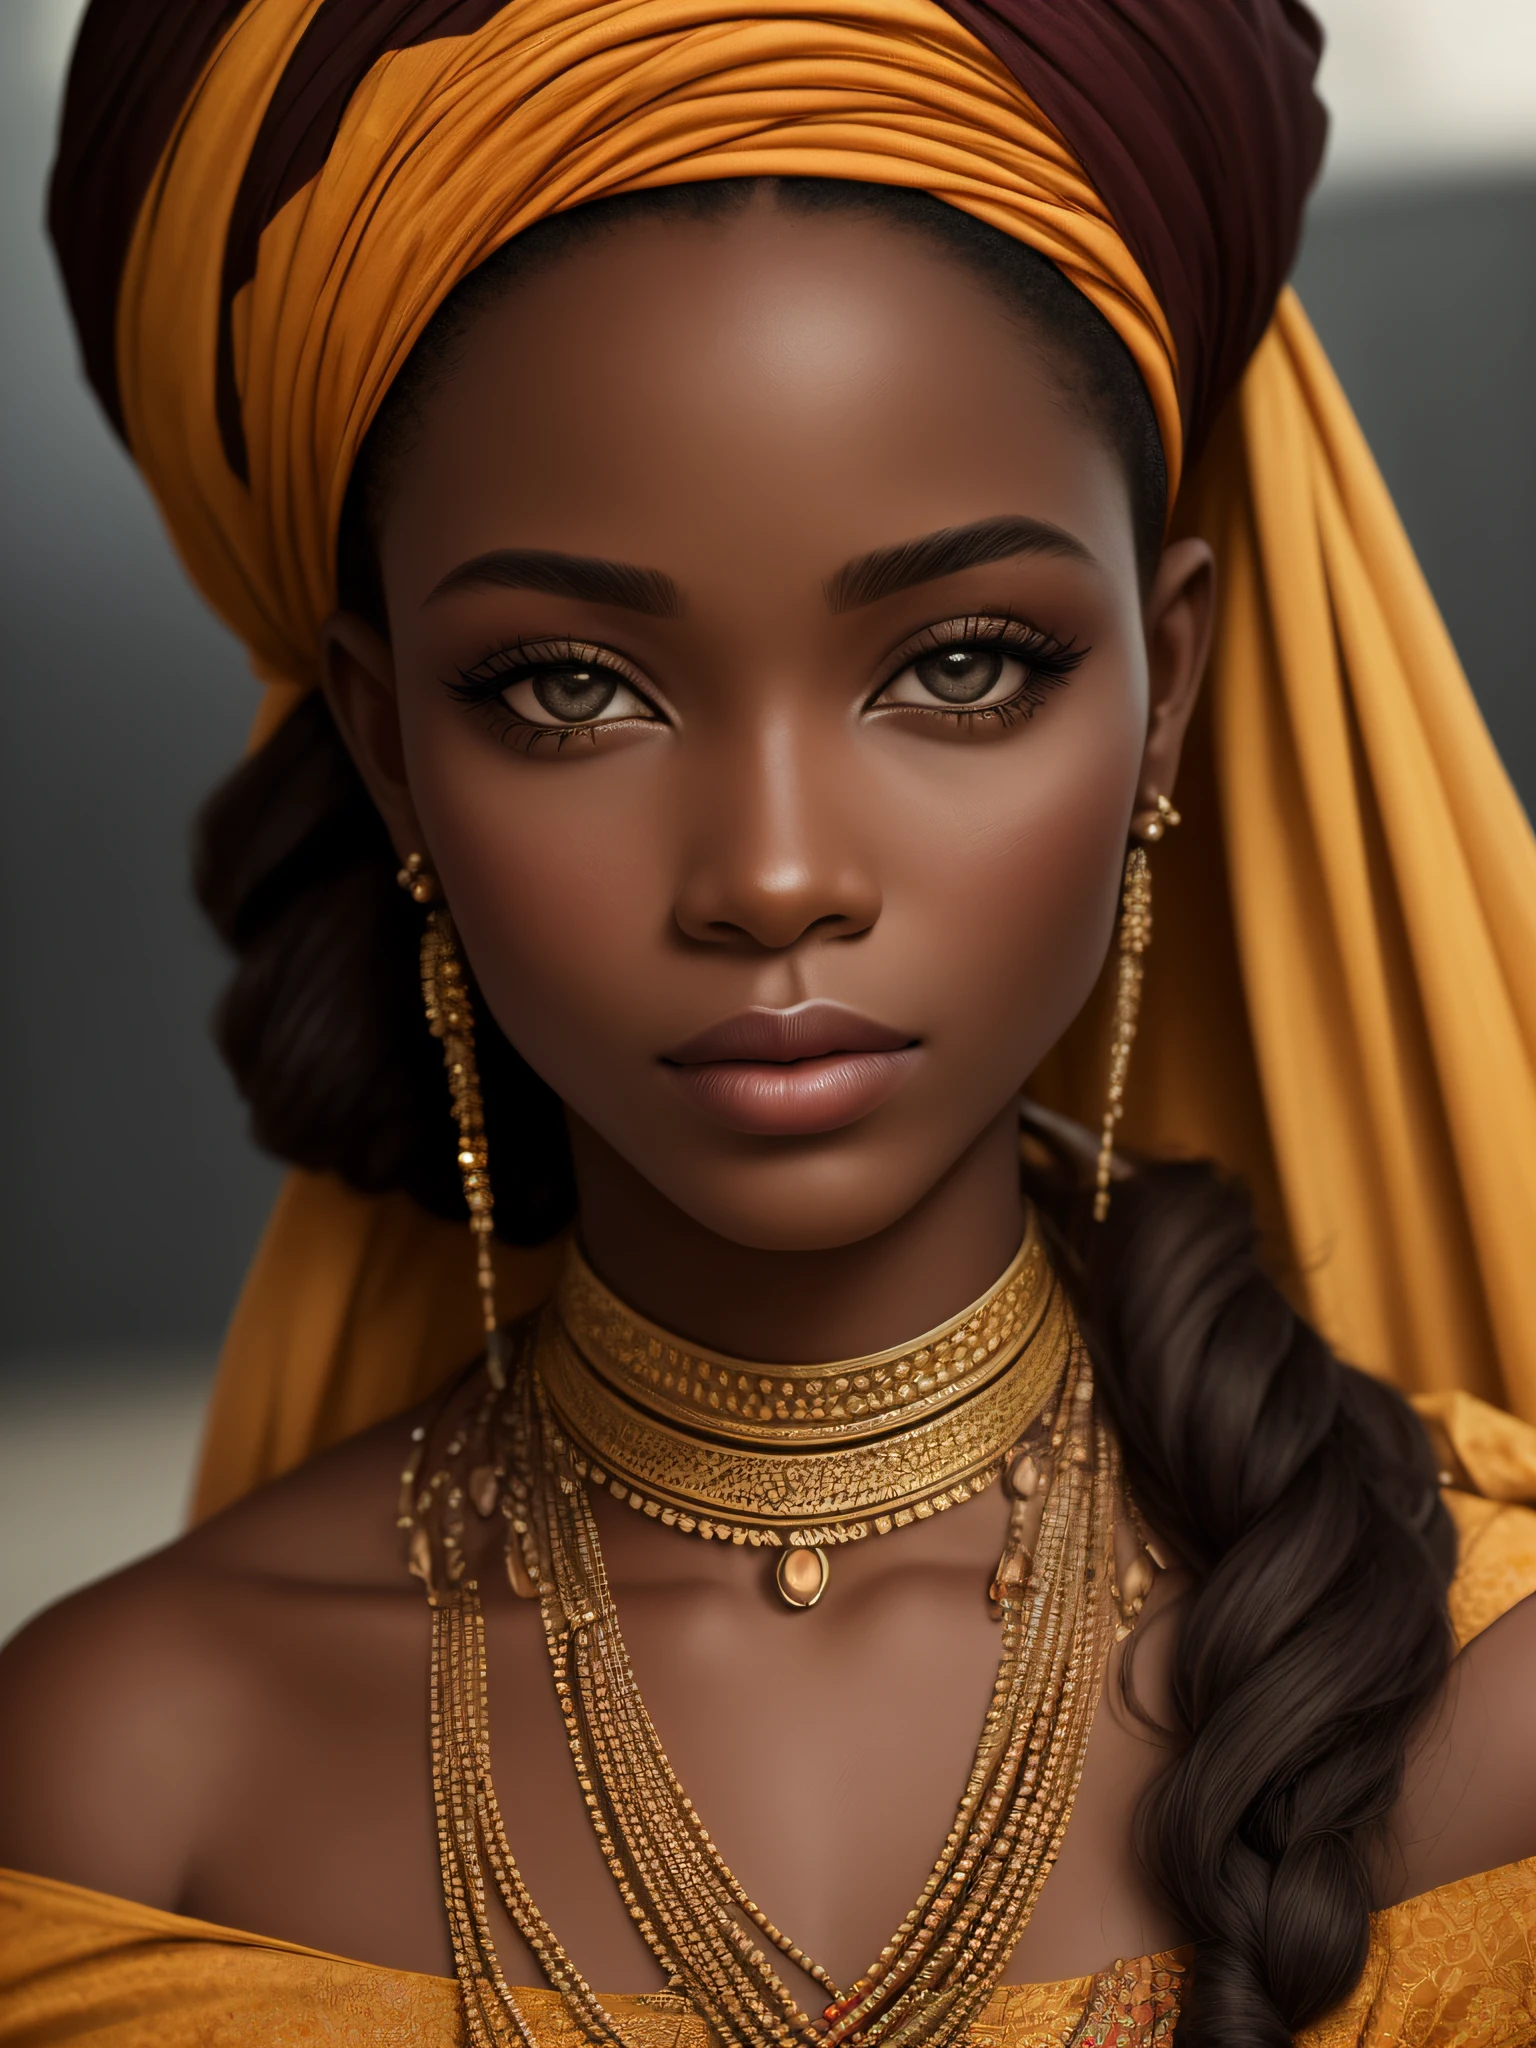 Ein realistisches ethnisches Modellbild der schönsten Frau Afrikas, Fotografie, Porträtstil, Inspiriert von Mode- und Beauty-Fotografen, Lens: 50mm, mittlere Ebene, natürliche Beleuchtung, 8K-Auflösung --auto